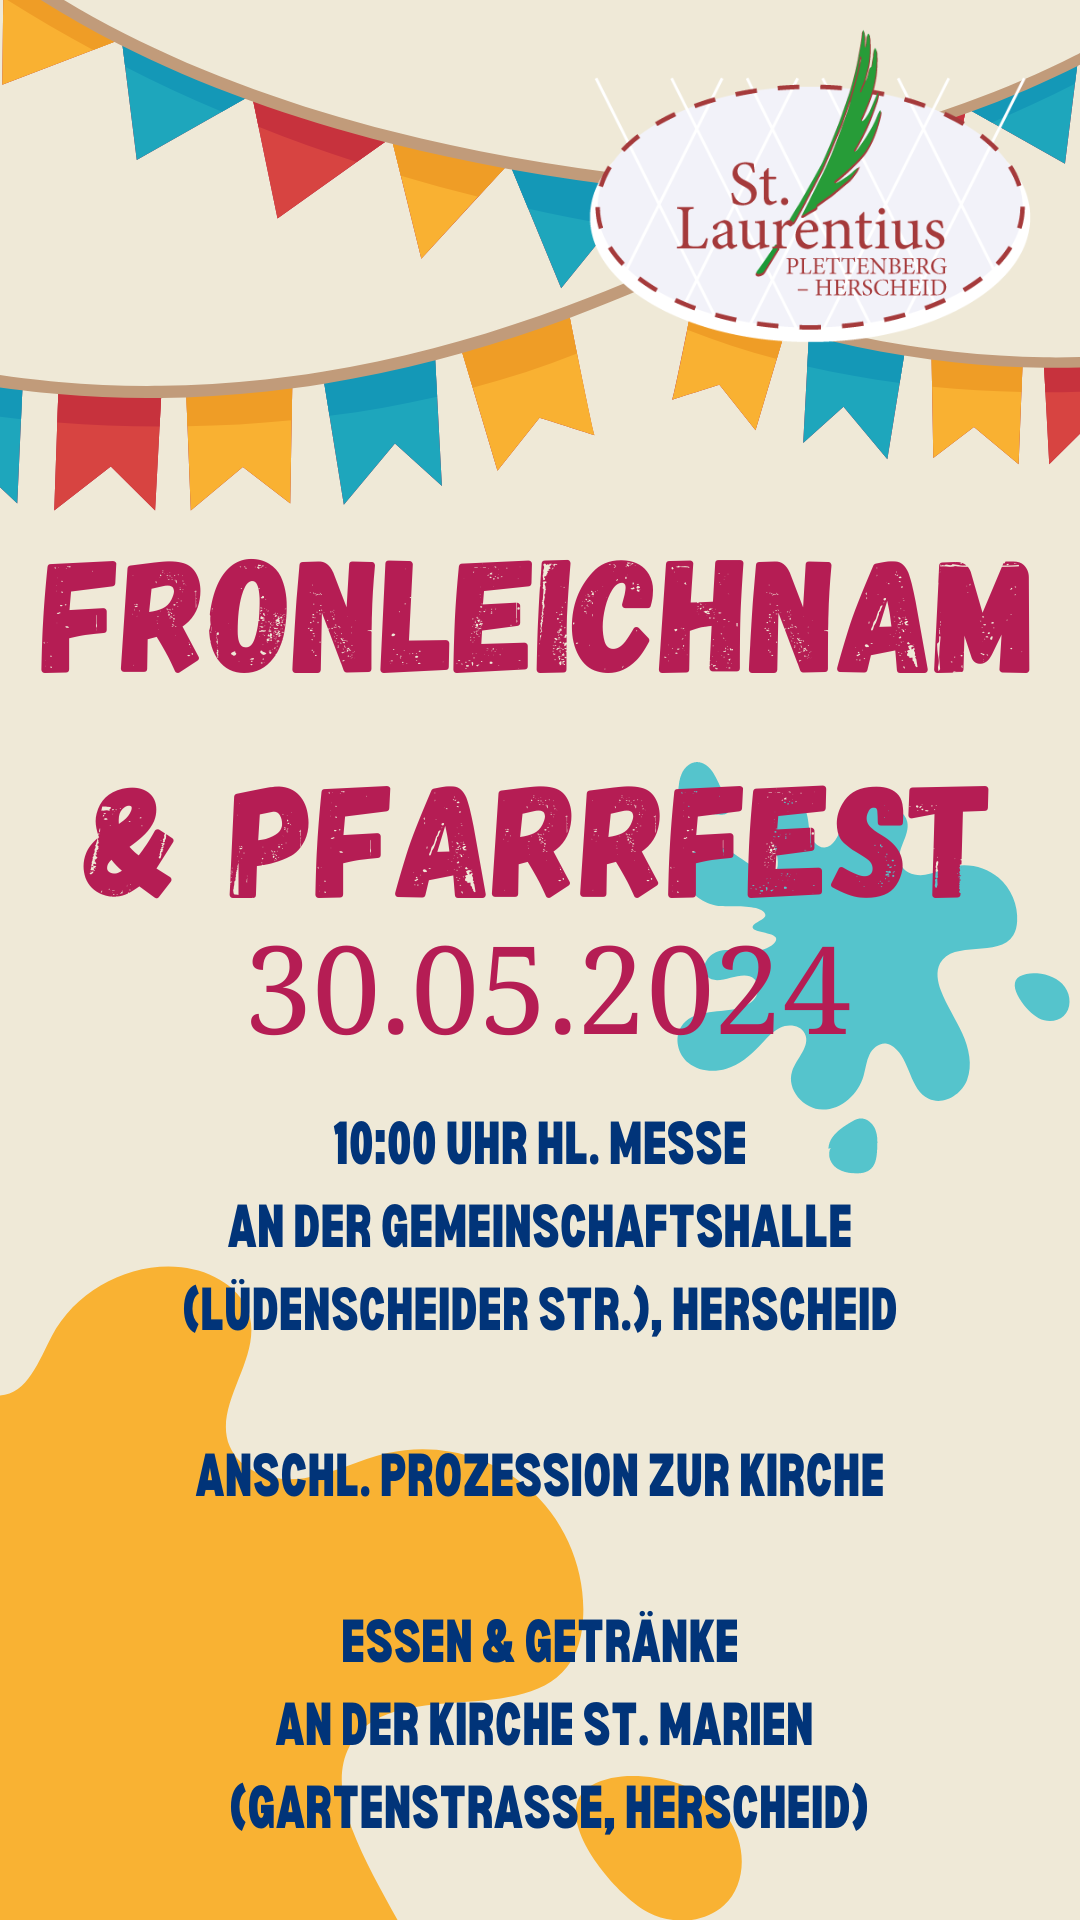 Fronleichnam & Pfarrfest 2024